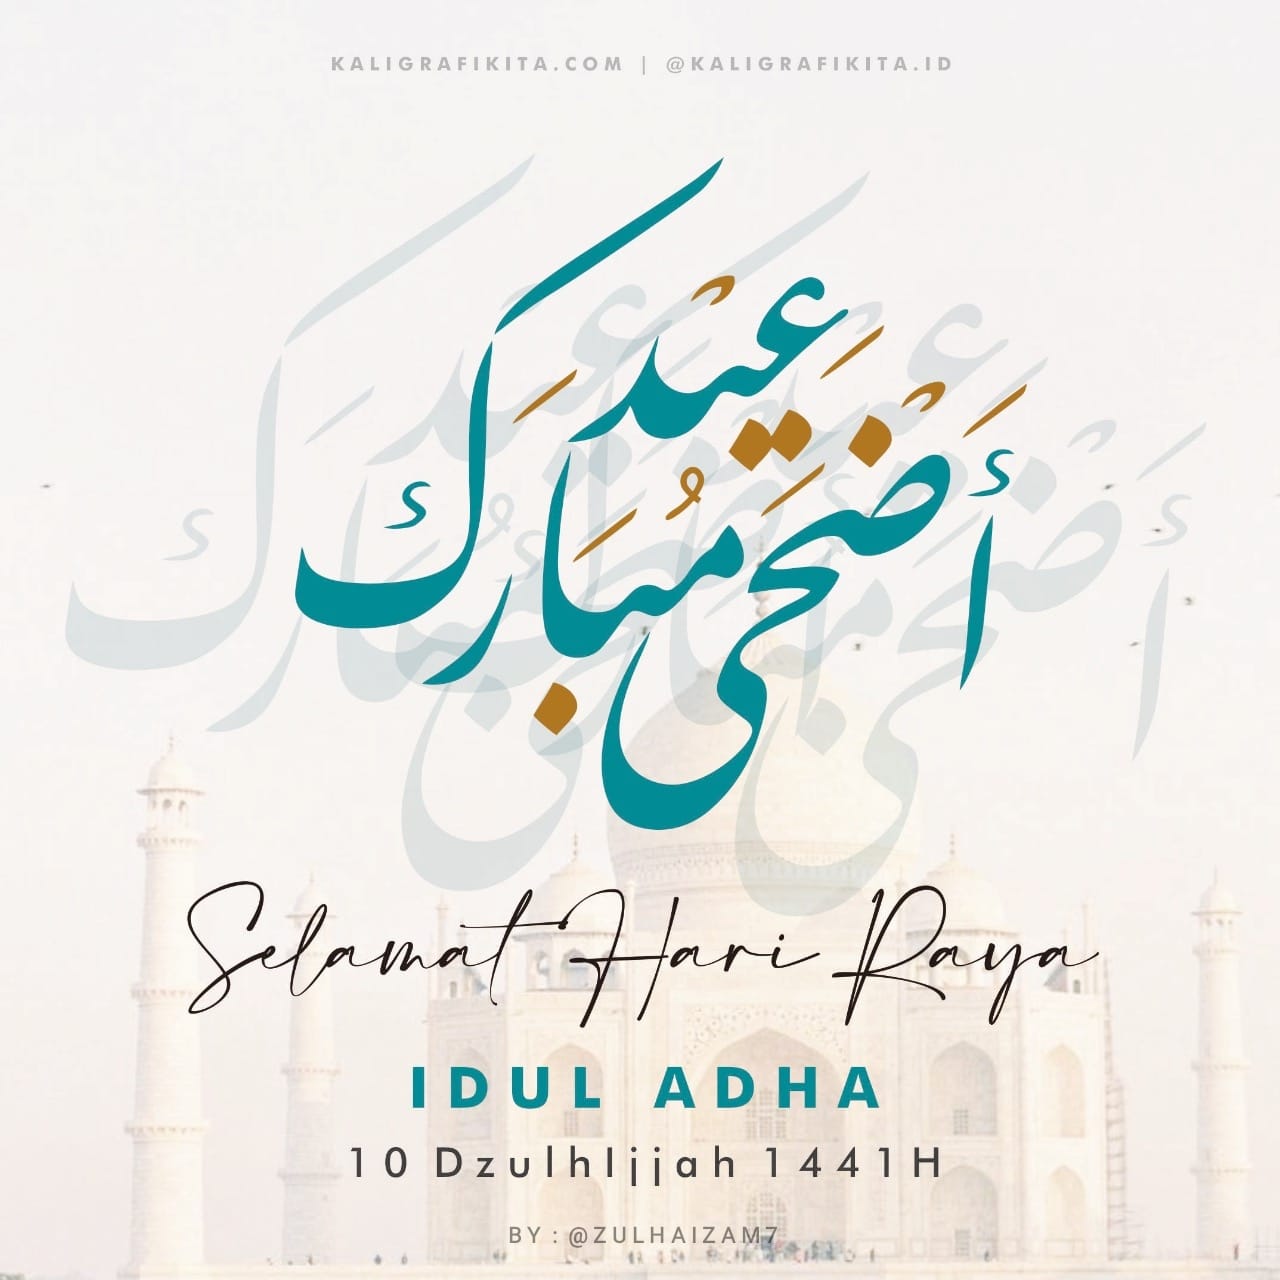 Download Selamat Hari Raya Idul Adha
10 Dzulhijjah 1441 H 
Mohon maaf lahir batin semua…